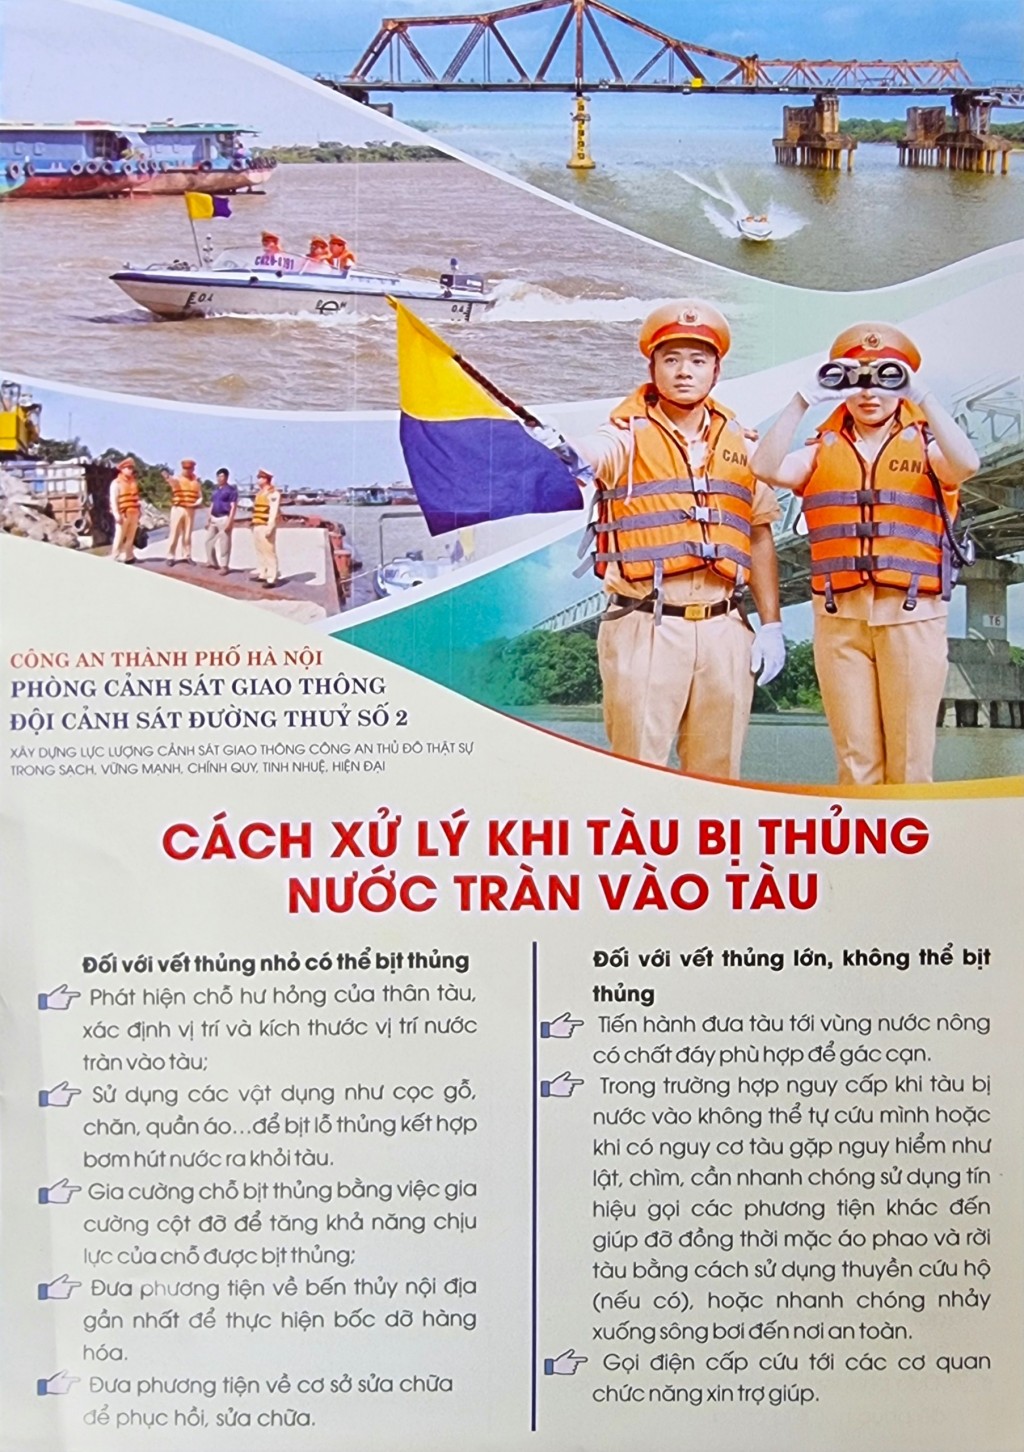 Cảnh sát giao thông Hà Nội hướng dẫn cách xử lý khi tàu, phà bị sự cố